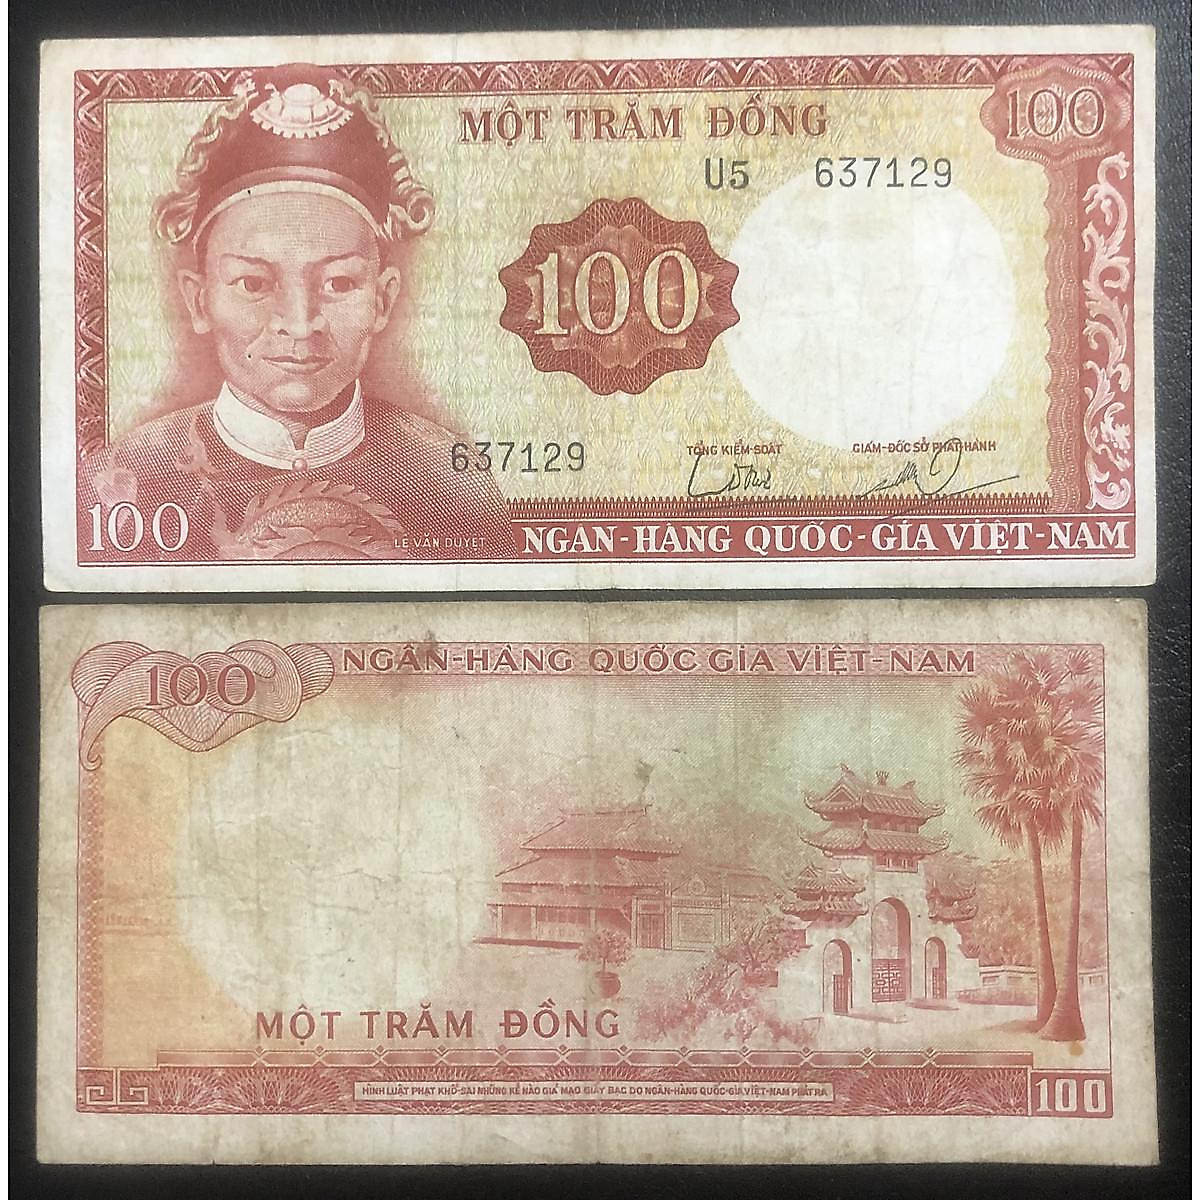 Tiền cổ 100 đồng chứa đựng nhiều sự tinh tế và giá trị lịch sử. Mỗi đồng tiền đều kể một câu chuyện khác nhau về quá khứ và văn hóa Việt Nam. Hãy cùng trải nghiệm những giá trị này qua hình ảnh đẹp mắt và sắc nét.